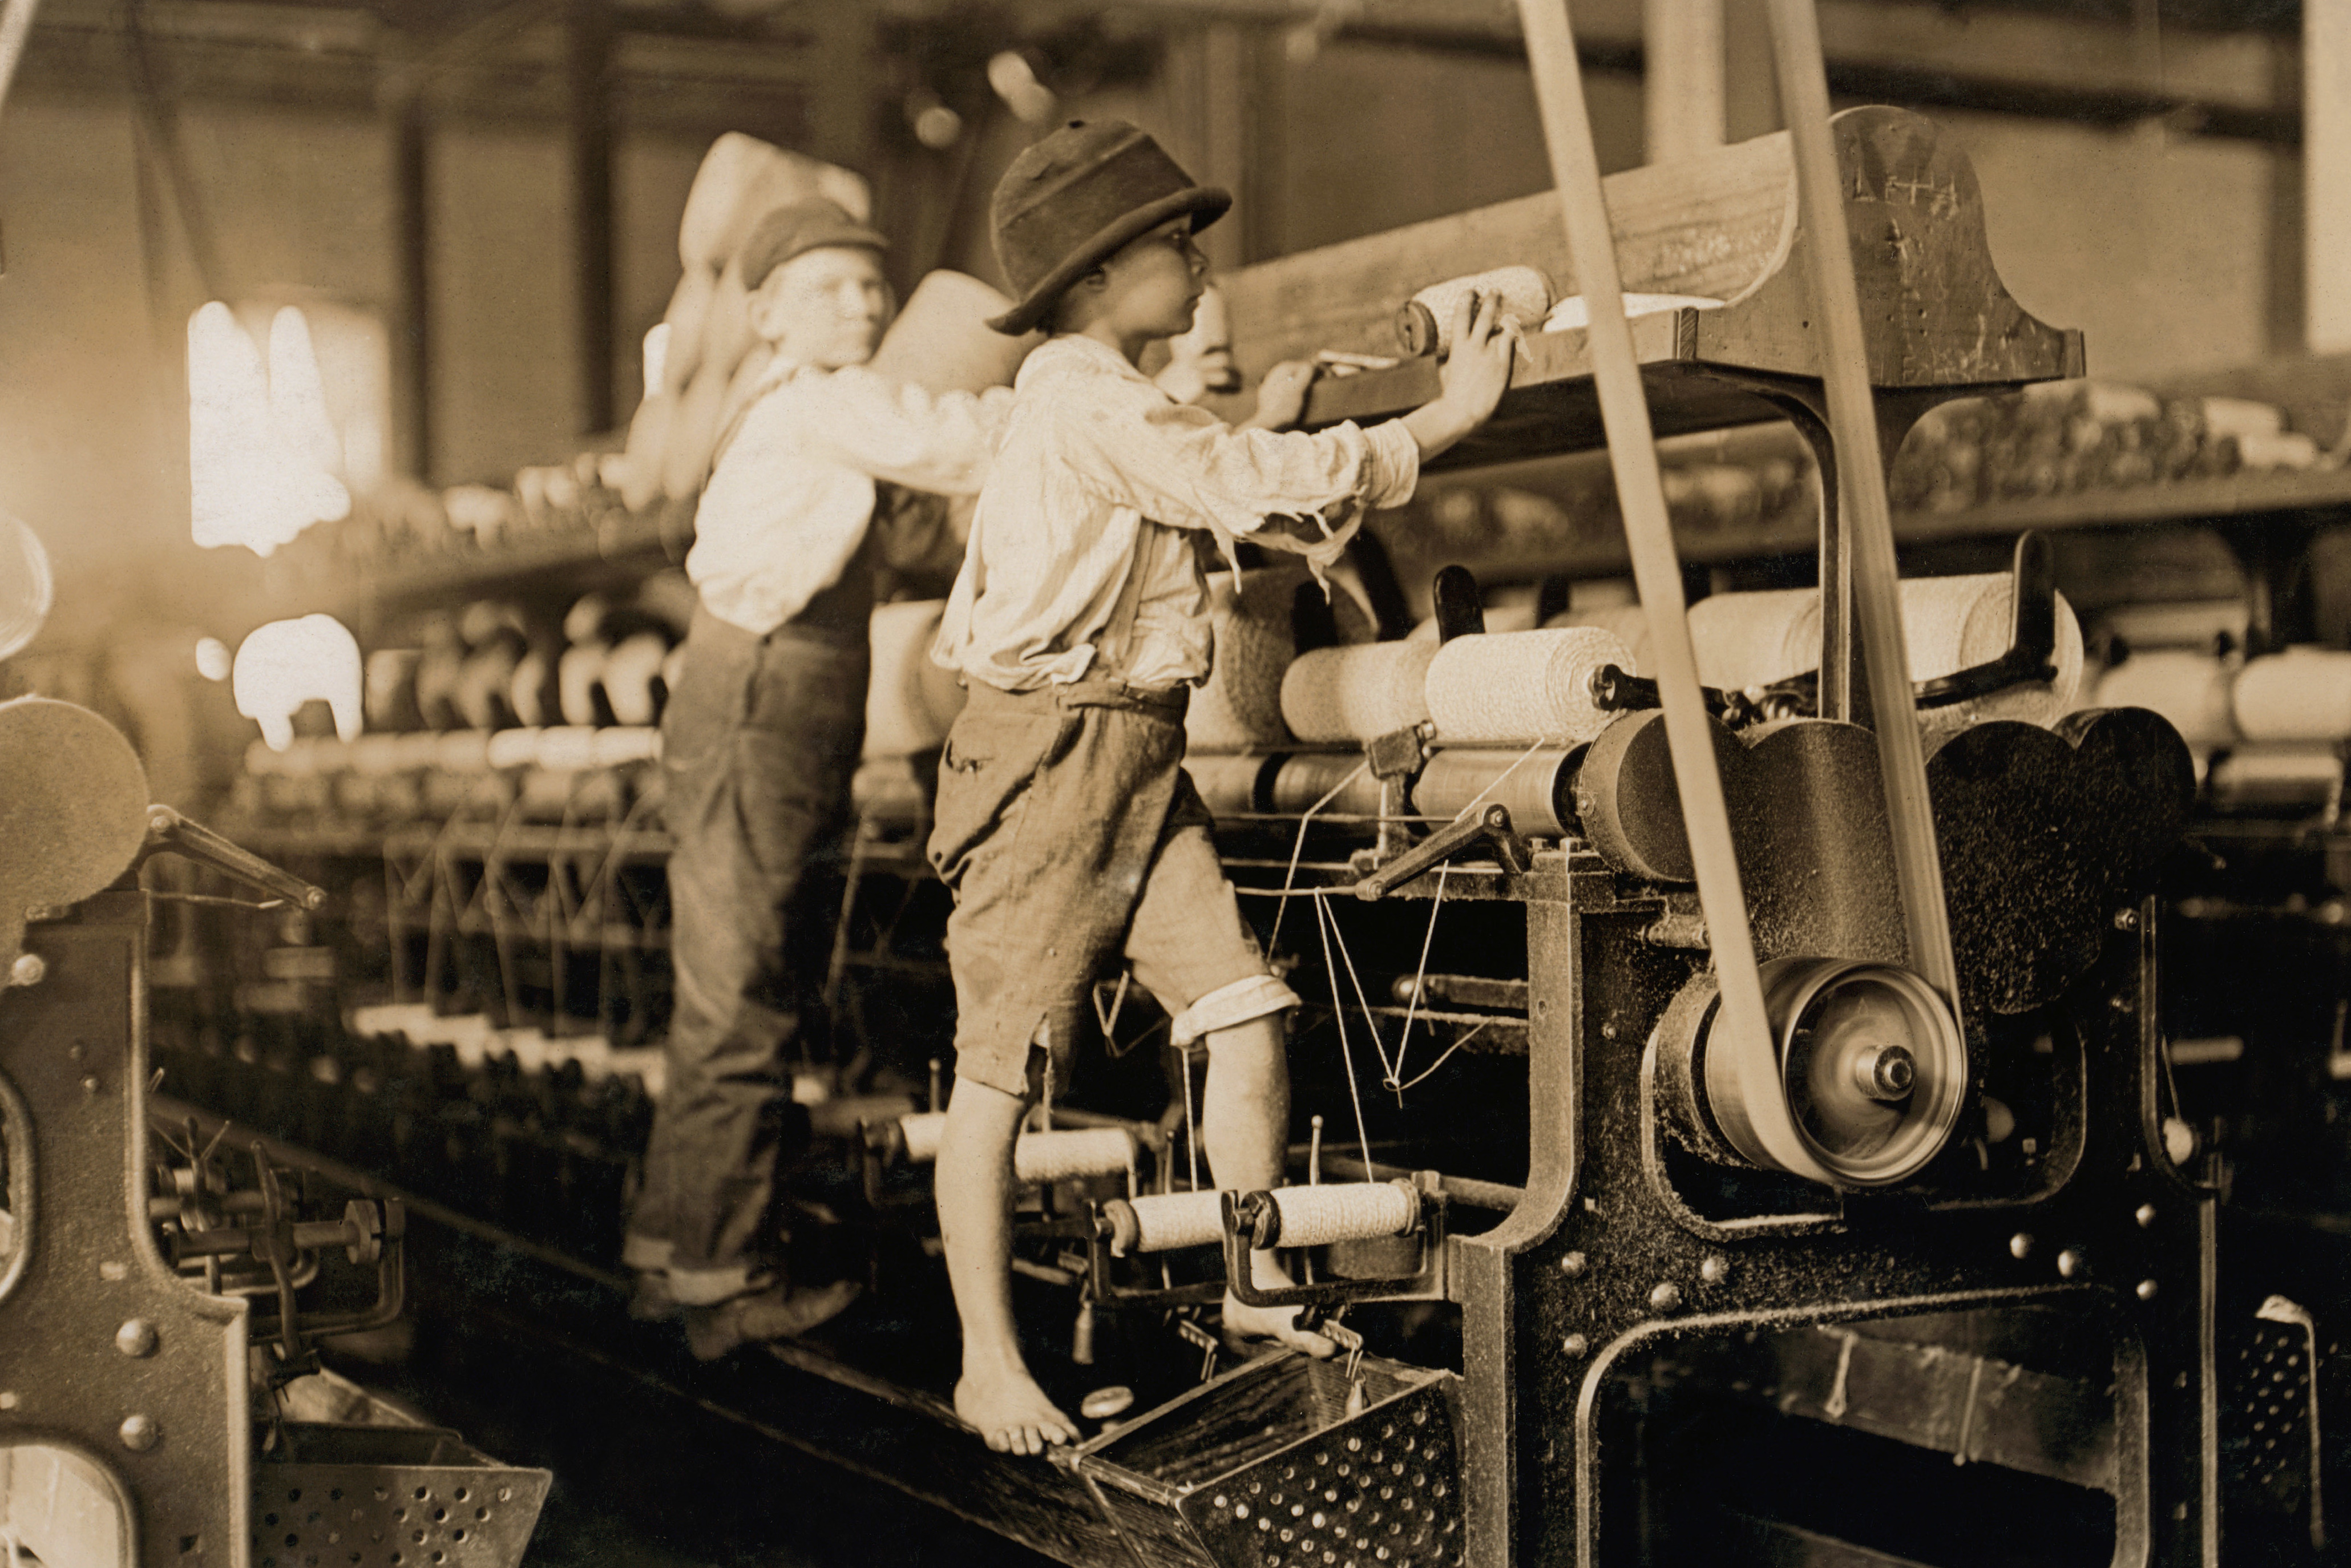 Рабочие 18 века. Работницы на ткацкой фабрике 19 век Англия. Детский труд в Англии в 19 веке. Льюис Хайн девочка на ткацкой фабрике. Ткацкая фабрика Великобритания 19 век.